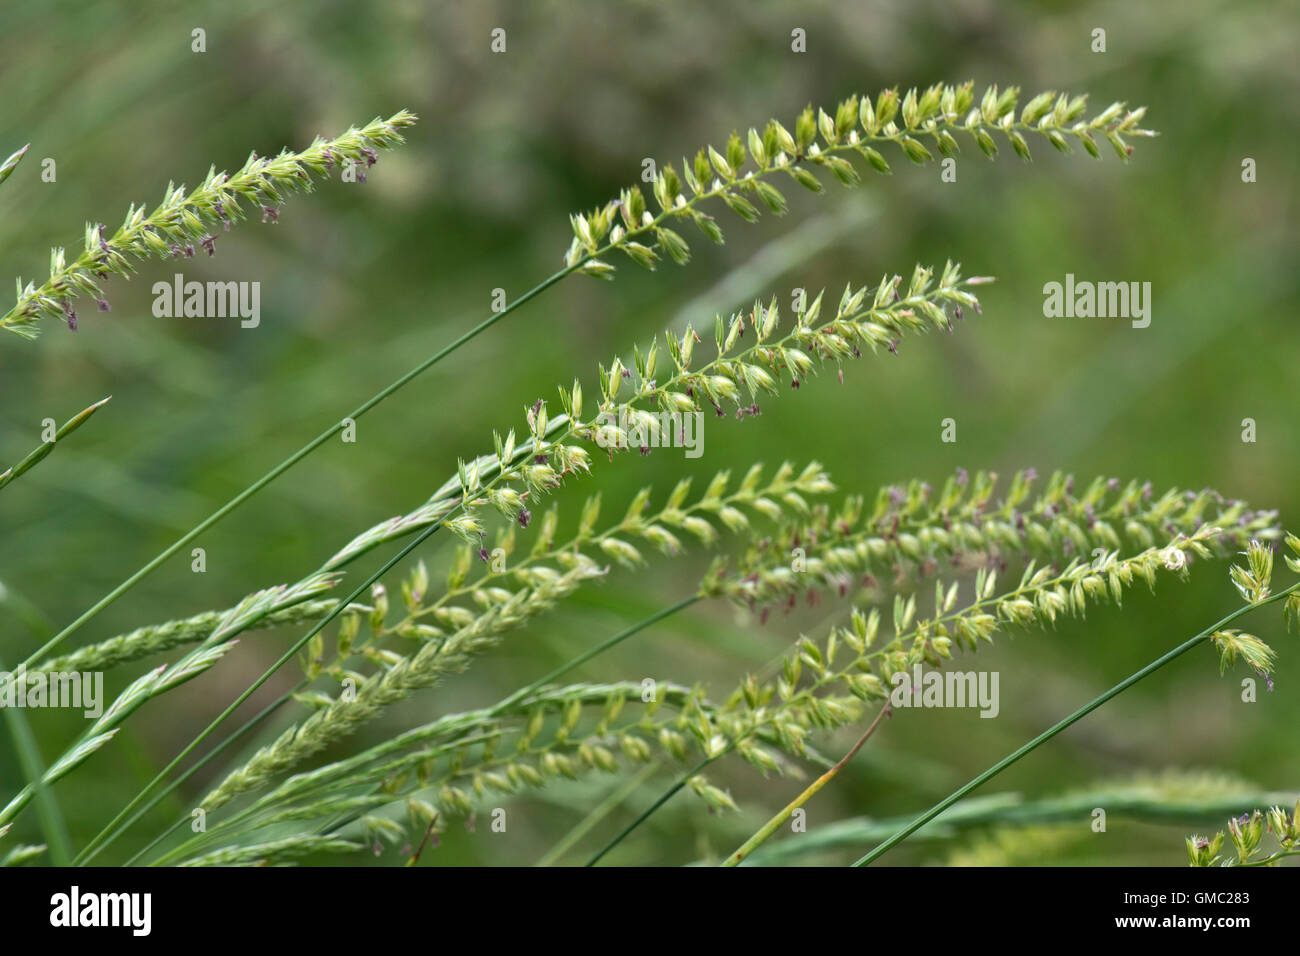 Crested dog-tail hierba, Cynosurus cristatus, florece con otras hierbas, Junio Foto de stock